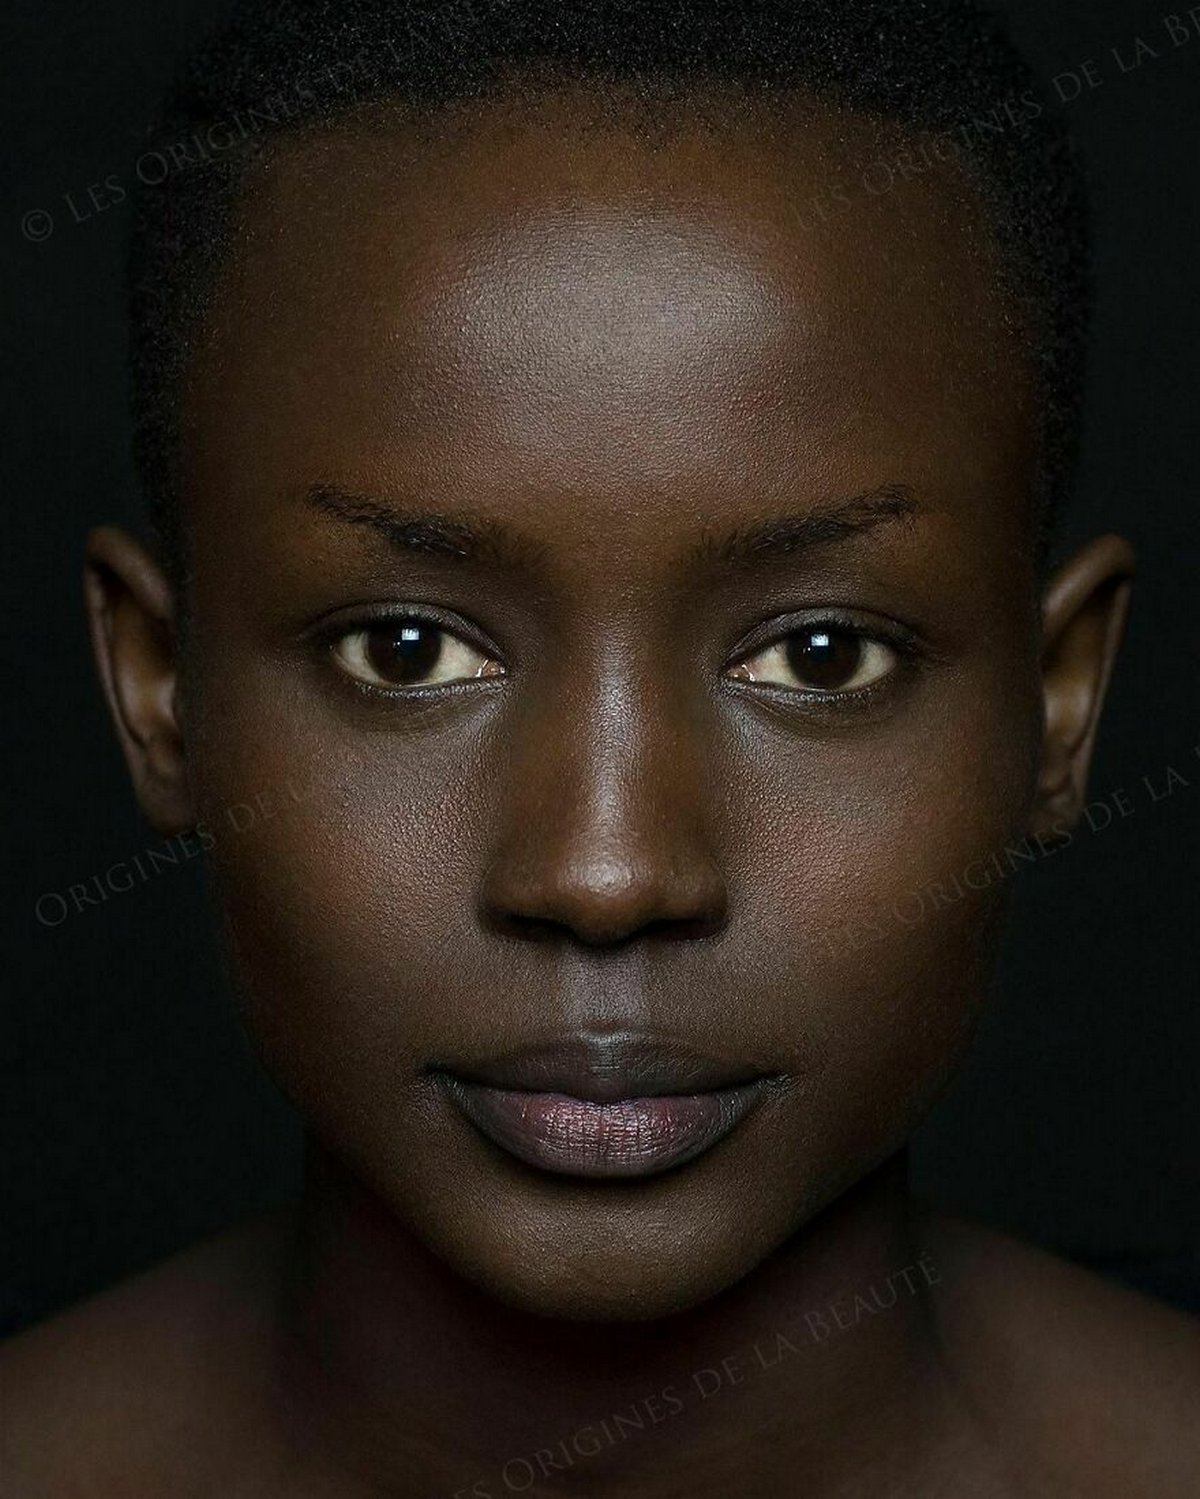 « Les origines de la beauté » montrent l’ampleur réelle de la diversité humaine en 30 portraits sublimes